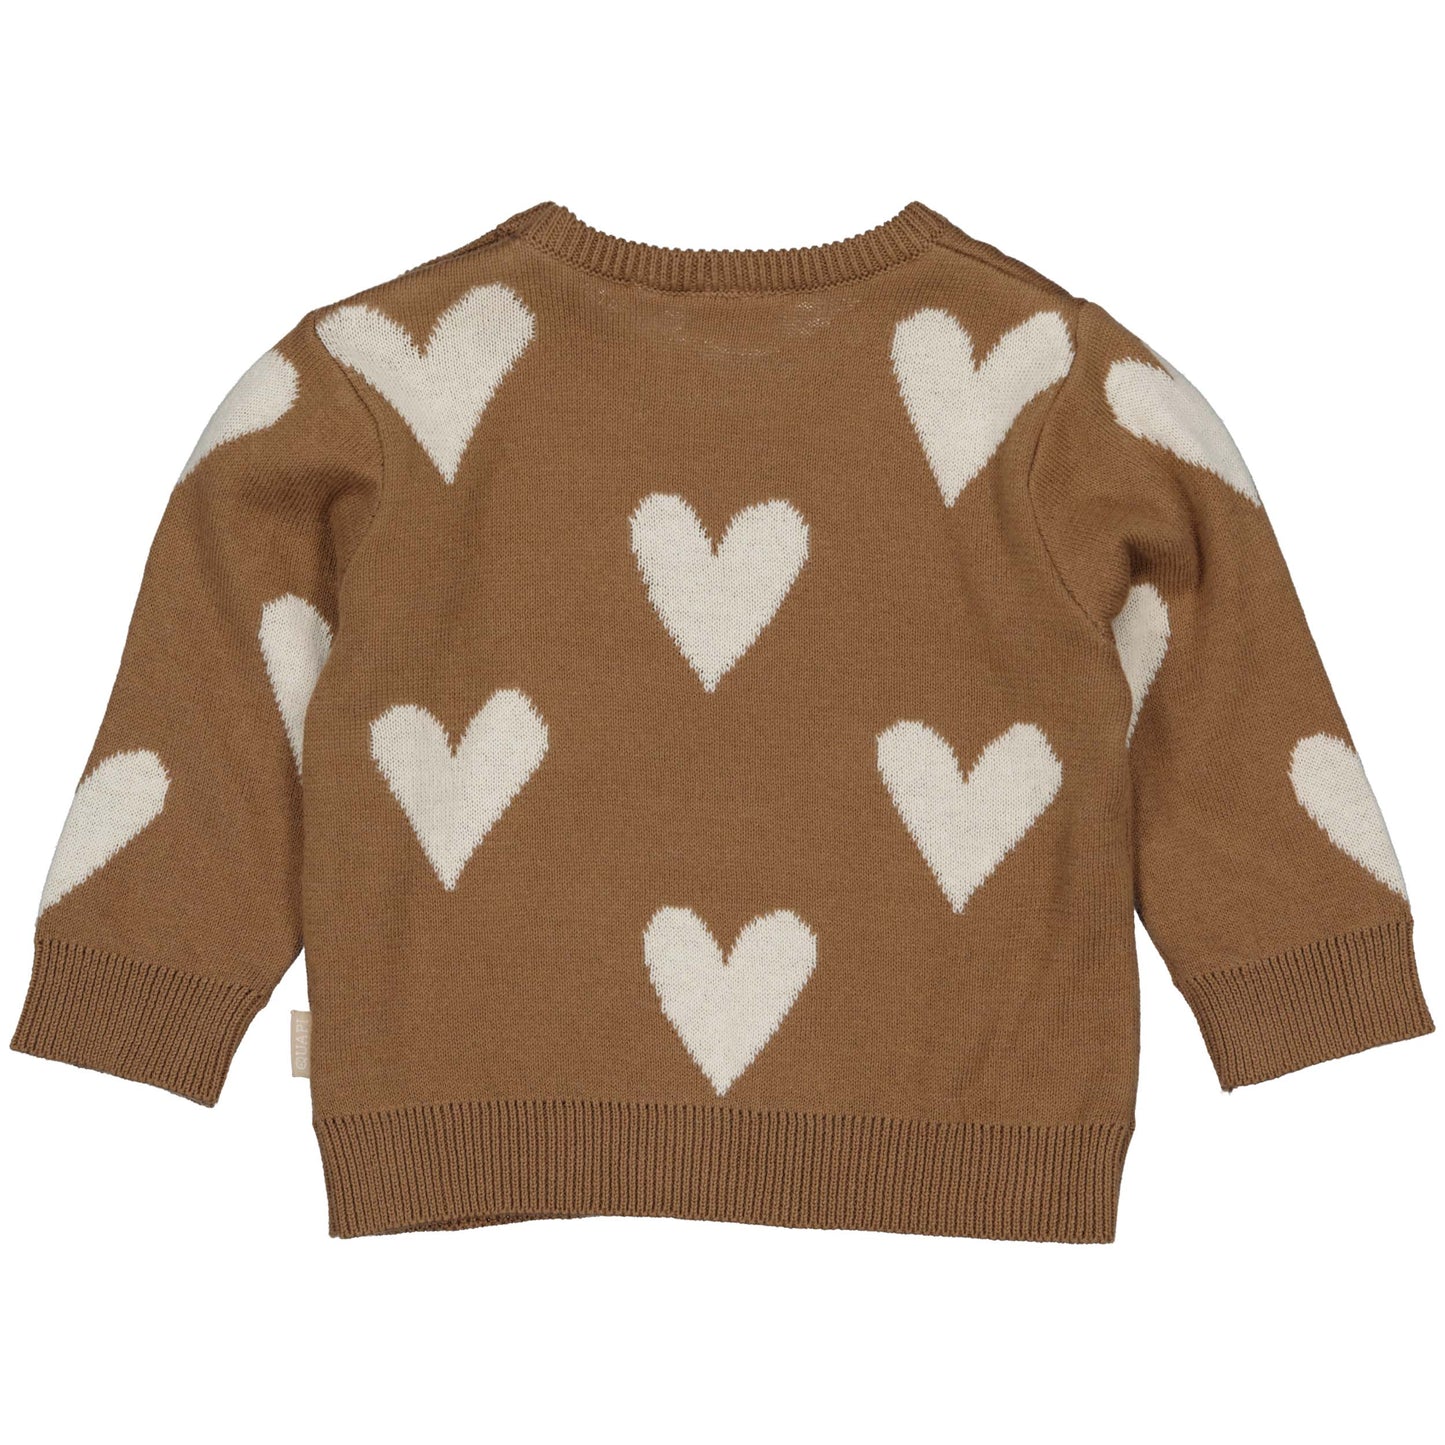 Quapi Newborn Sweater Channa